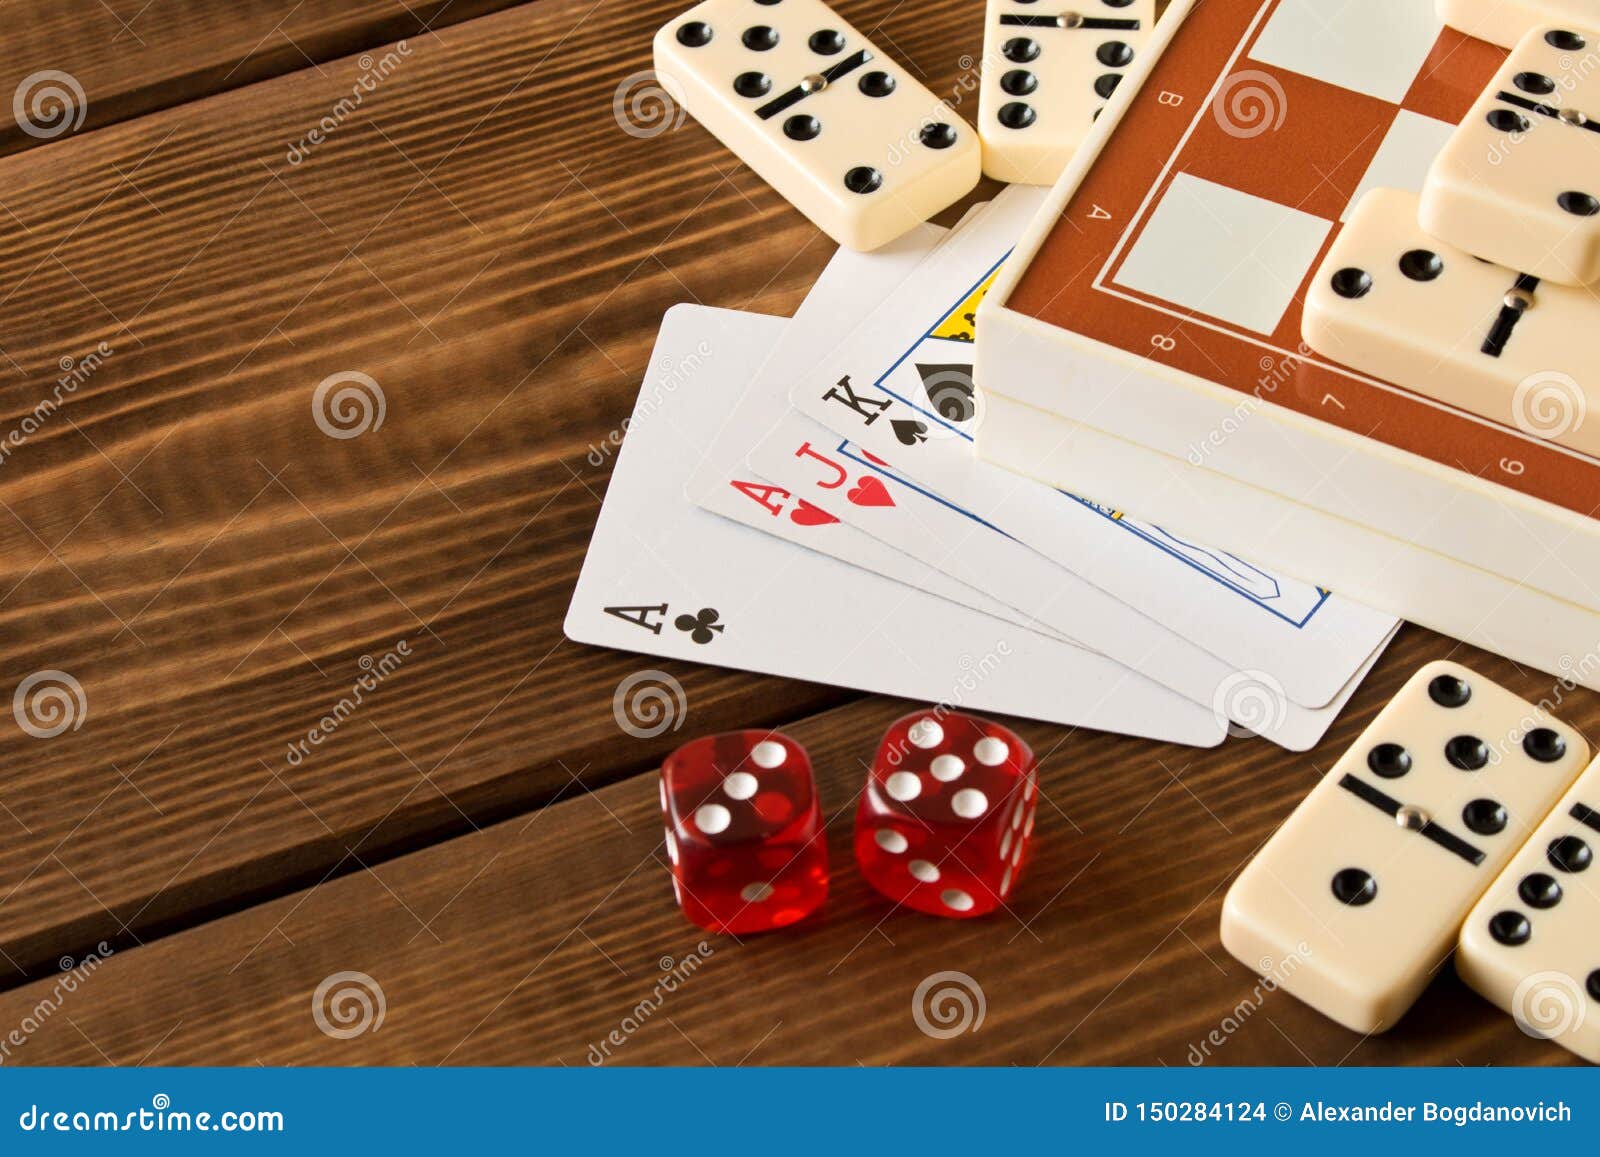 Как играть в игру домино в картах букмекерская контора в московском